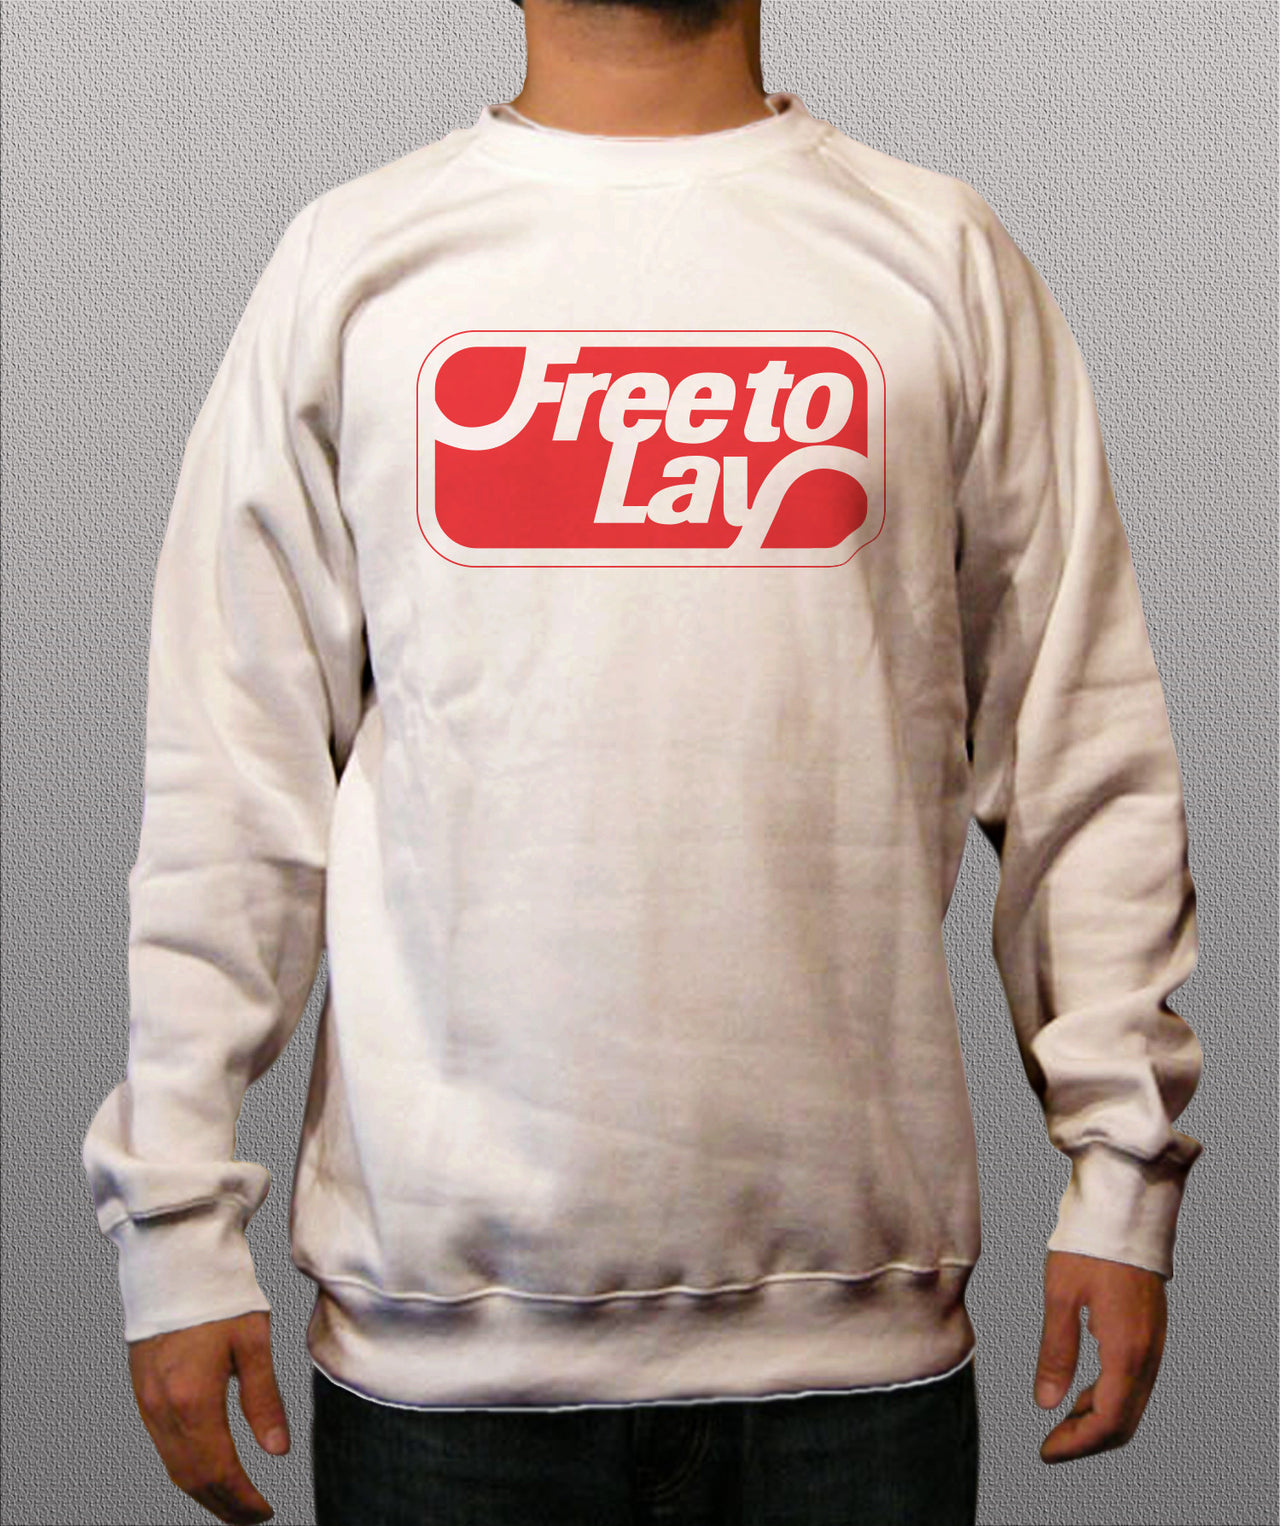 Free to lay White Crewneck Sweatshirt - TshirtNow.net - 1